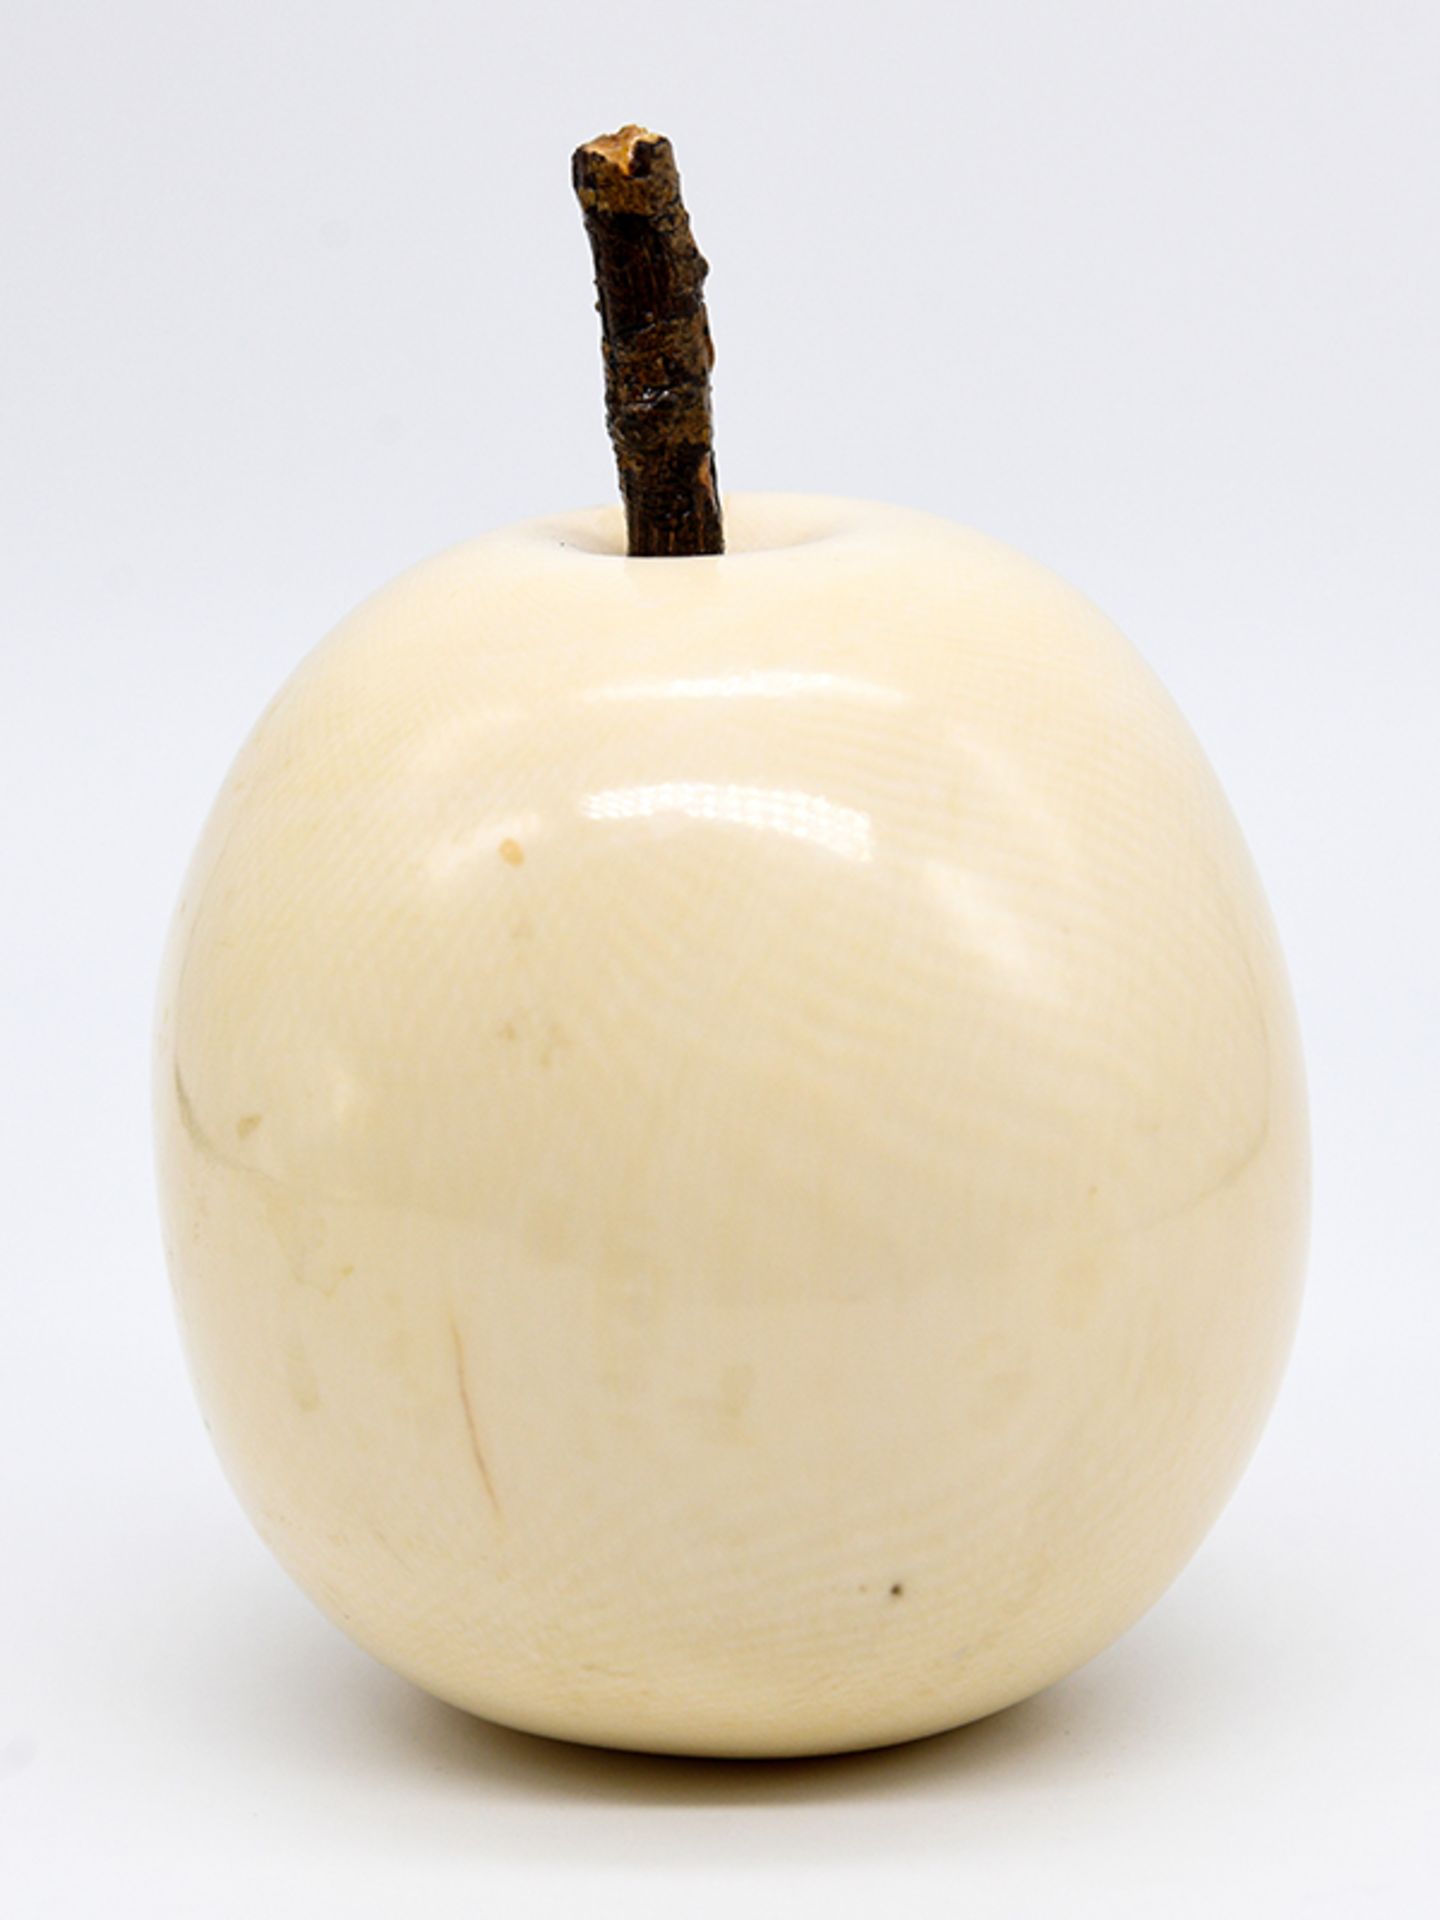 Okimono in Form eines Apfels, Japan, Meiji-Periode (frÃ¼hes 20. Jh.). brElfenbein mit dunkel